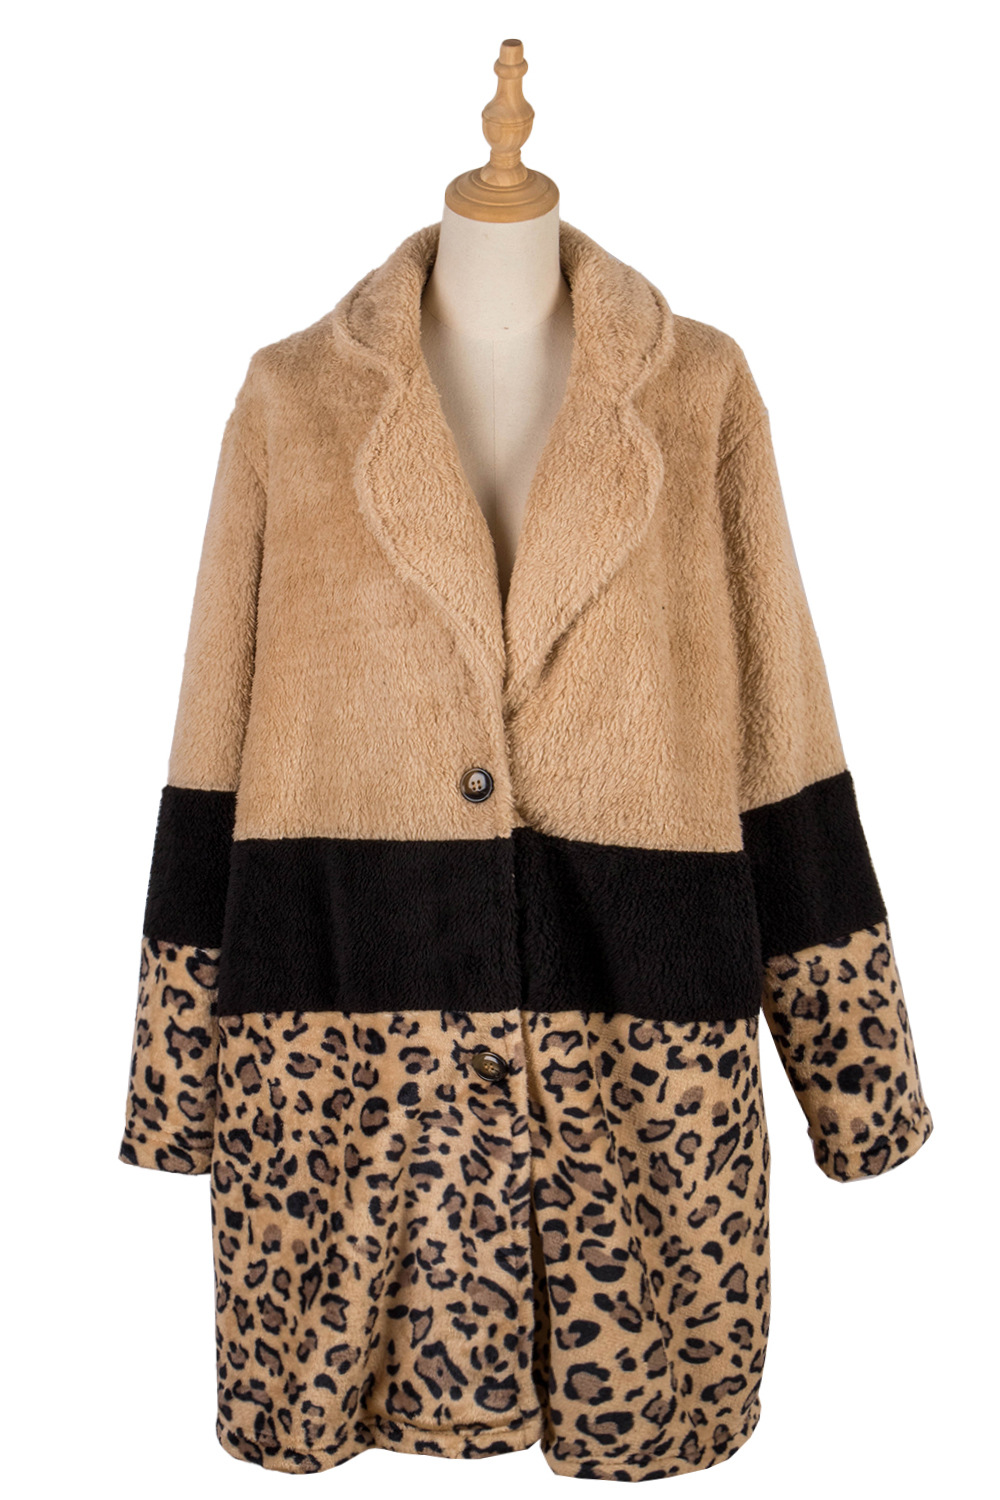 Leopard European style splice long fashion coat